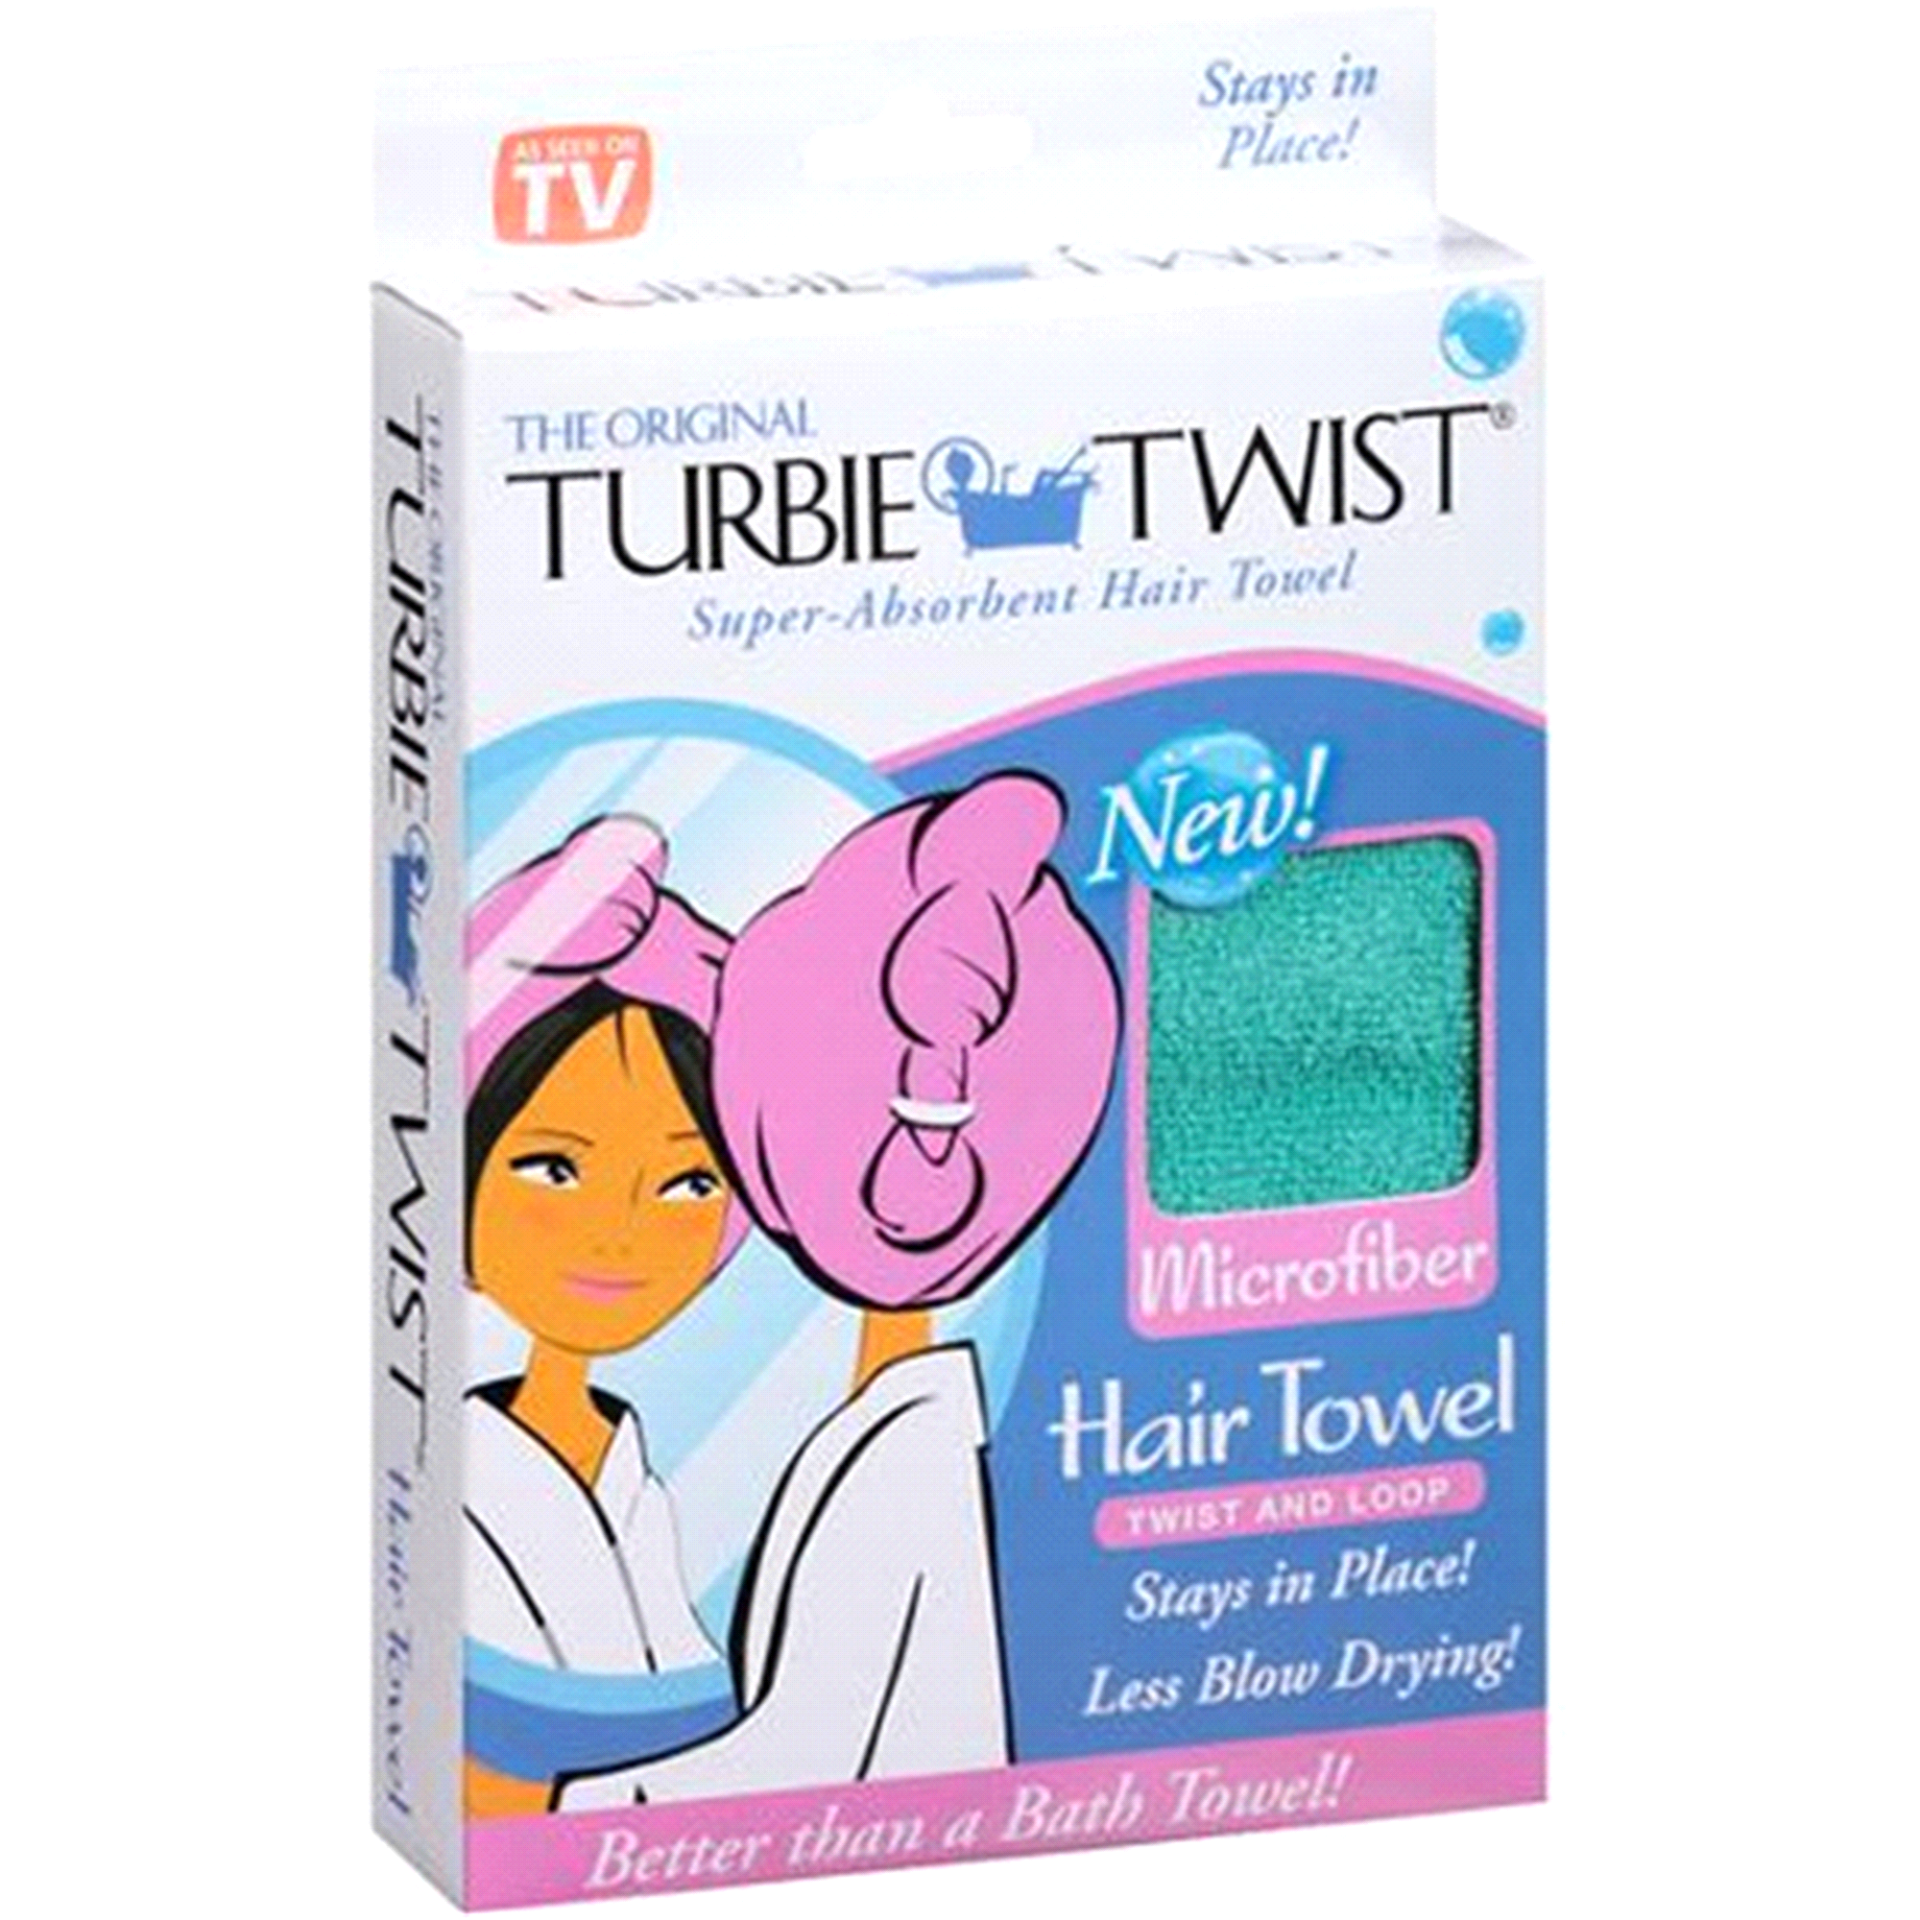 slide 1 of 9, Turbie Twist Microfiber Hair Towel, 1 ct